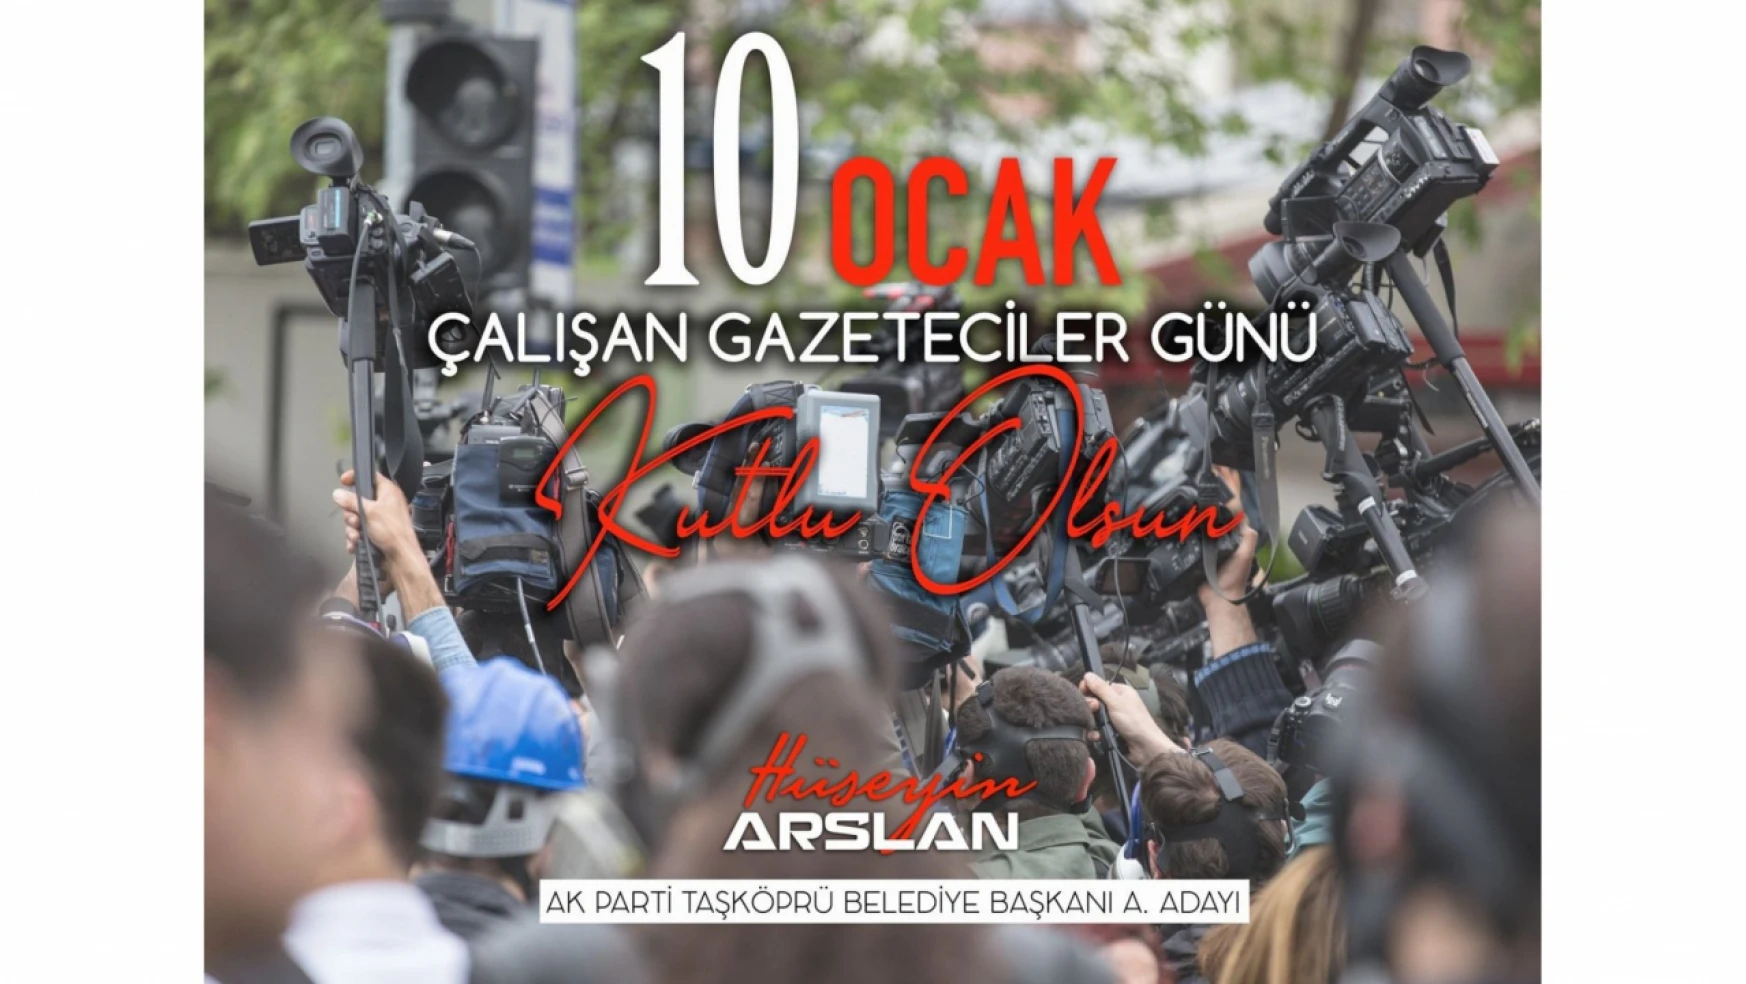 Hüseyin Arslan, Gazeteciler Günü'nü Kutladı